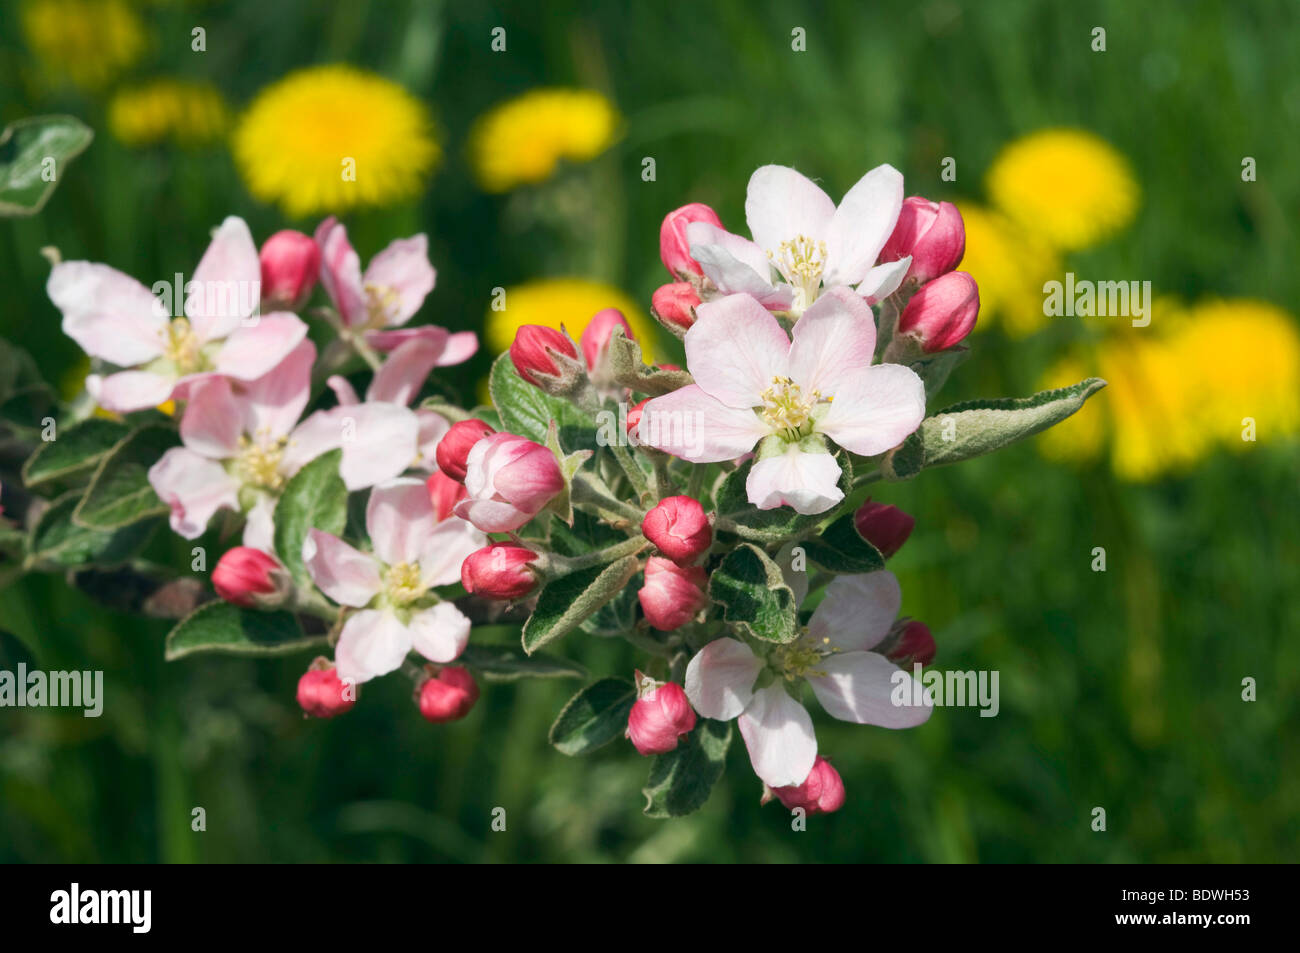 Apple blossom, Scena, Merano country, Trentino, Alto Adige, Italy, Europe Stock Photo